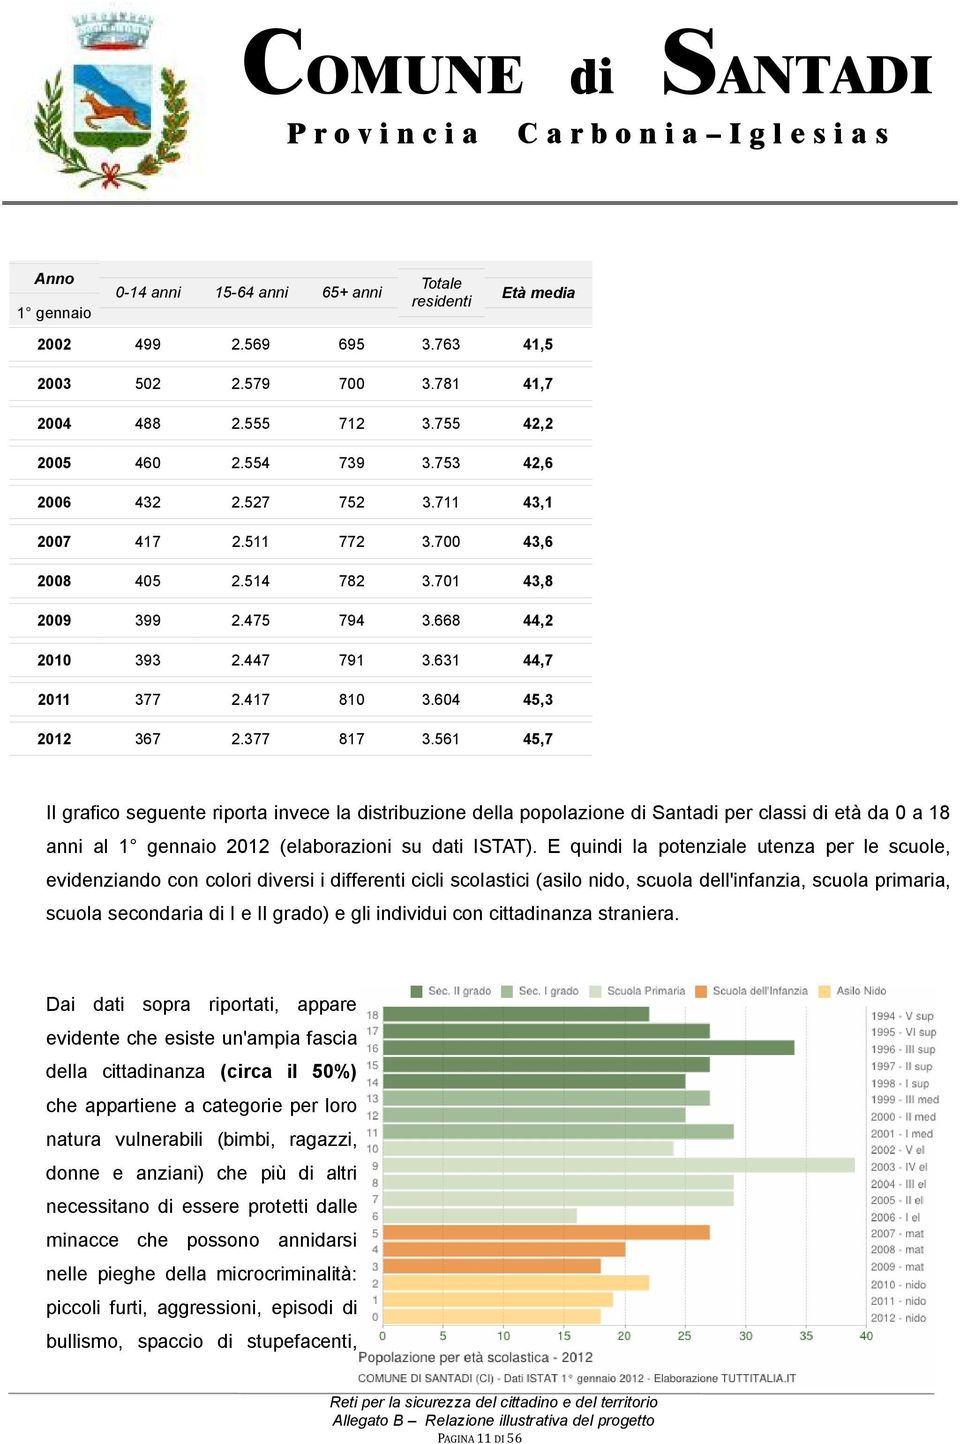 377 817 3.561 45,7 Il grafico seguente riporta invece la distribuzione della popolazione di Santadi per classi di età da 0 a 18 anni al 1 gennaio 2012 (elaborazioni su dati ISTAT).